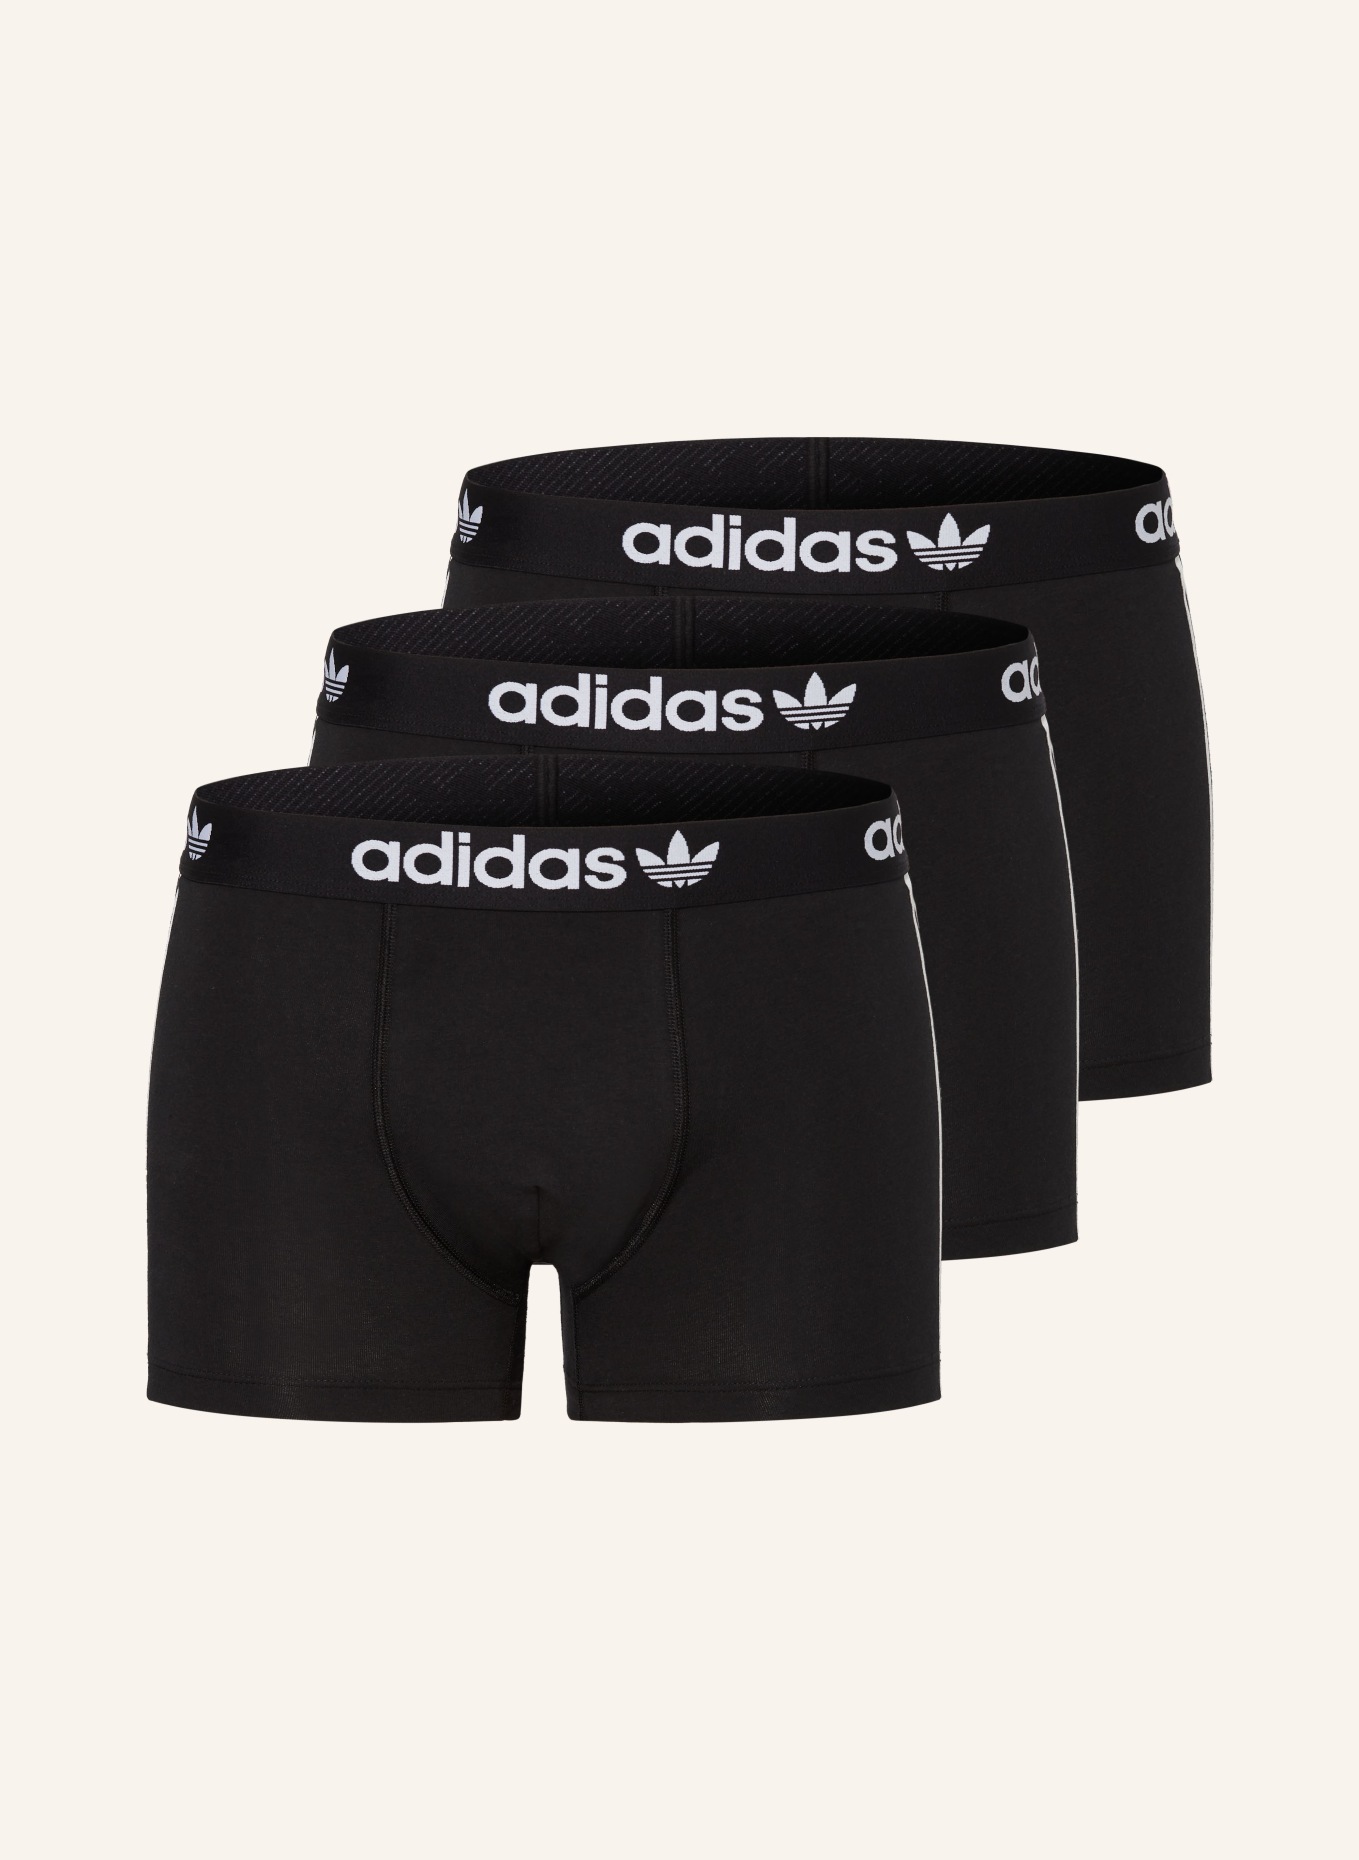 adidas Originals 3-pack boxer shorts COMFORT FLEX COTTON 3-STRIPES, Color: BLACK (Image 1)